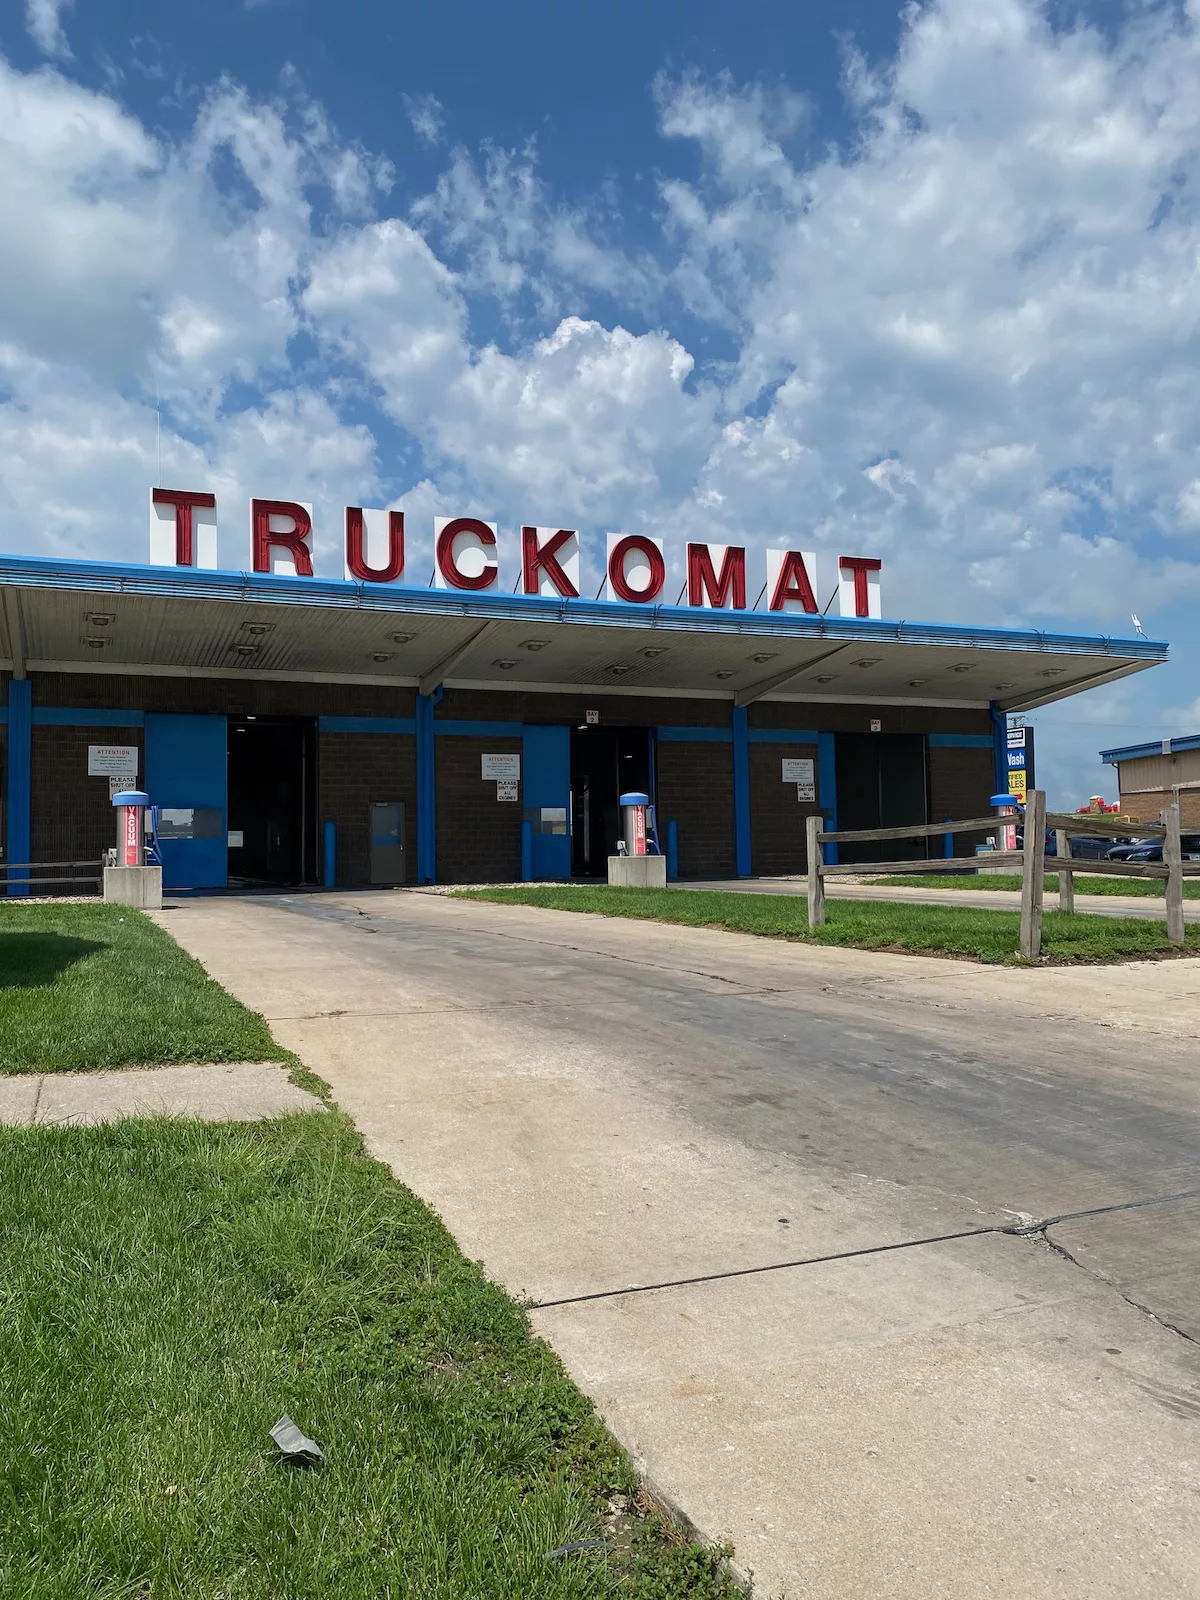 Truckomat truck wash at the World's Largest Truckstop in Walcott, Iowa